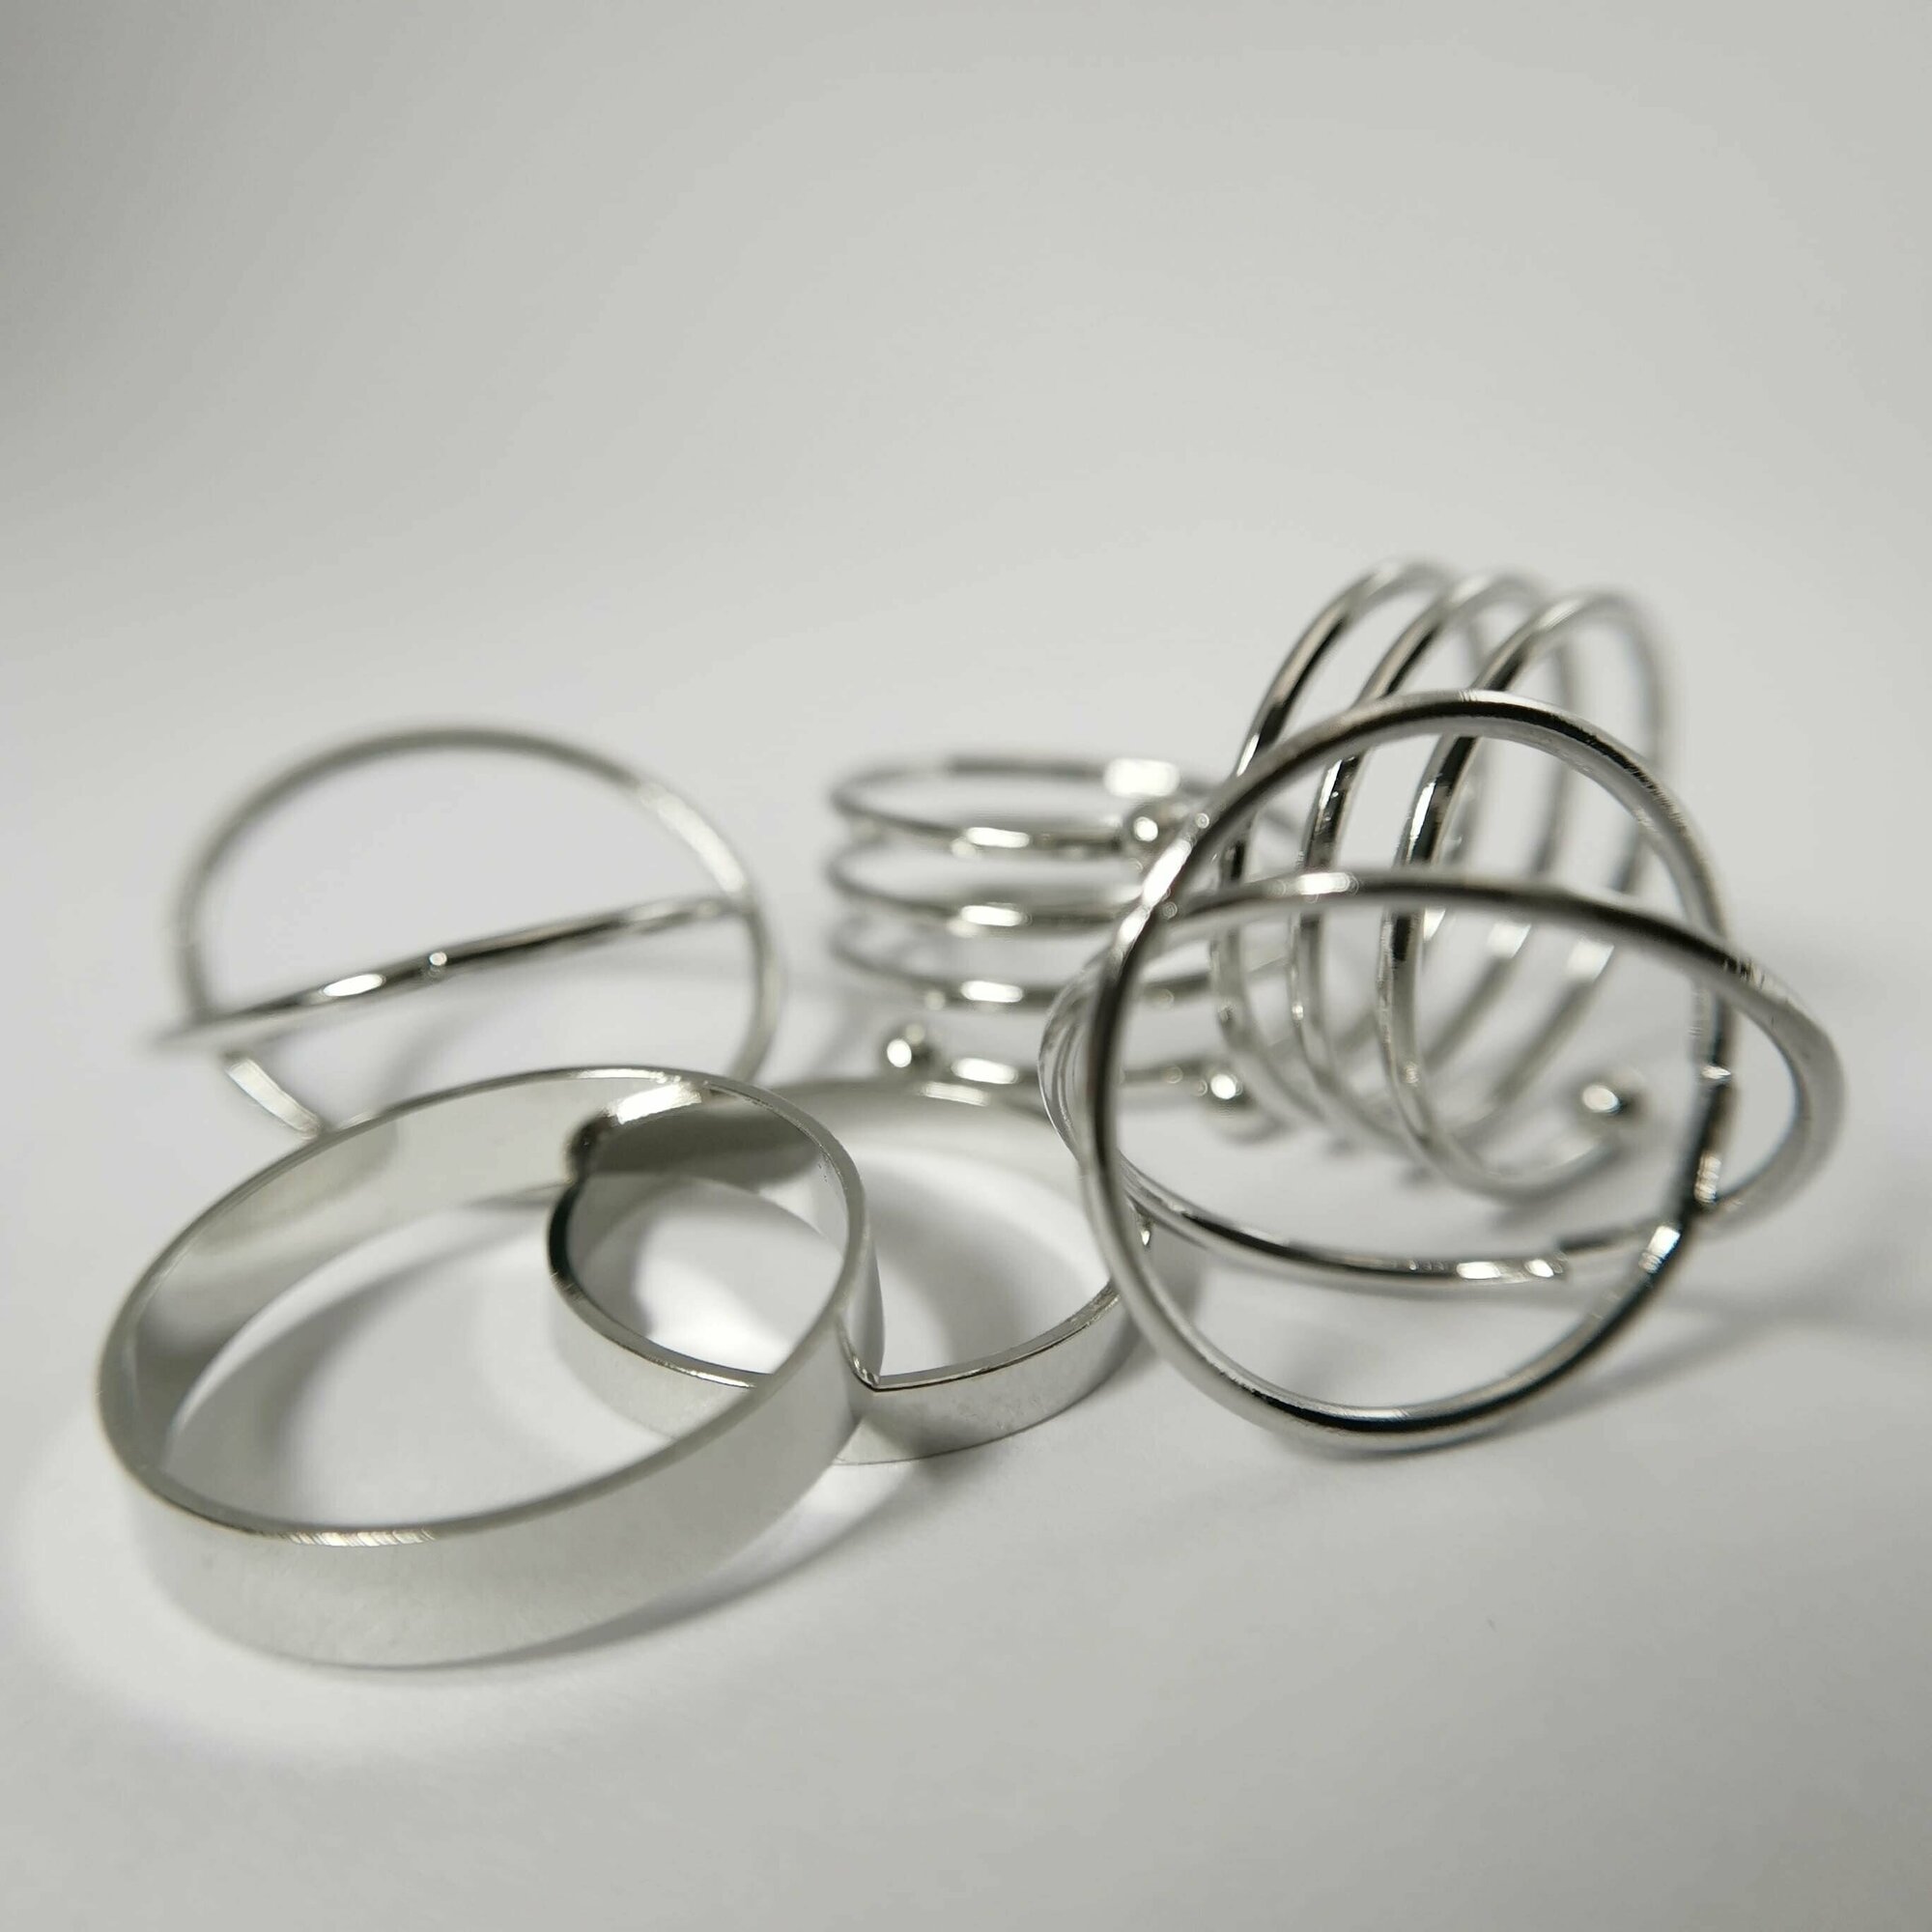 AS Artstudio набор колец для фотографирования маникюра, серебряные, 6 шт